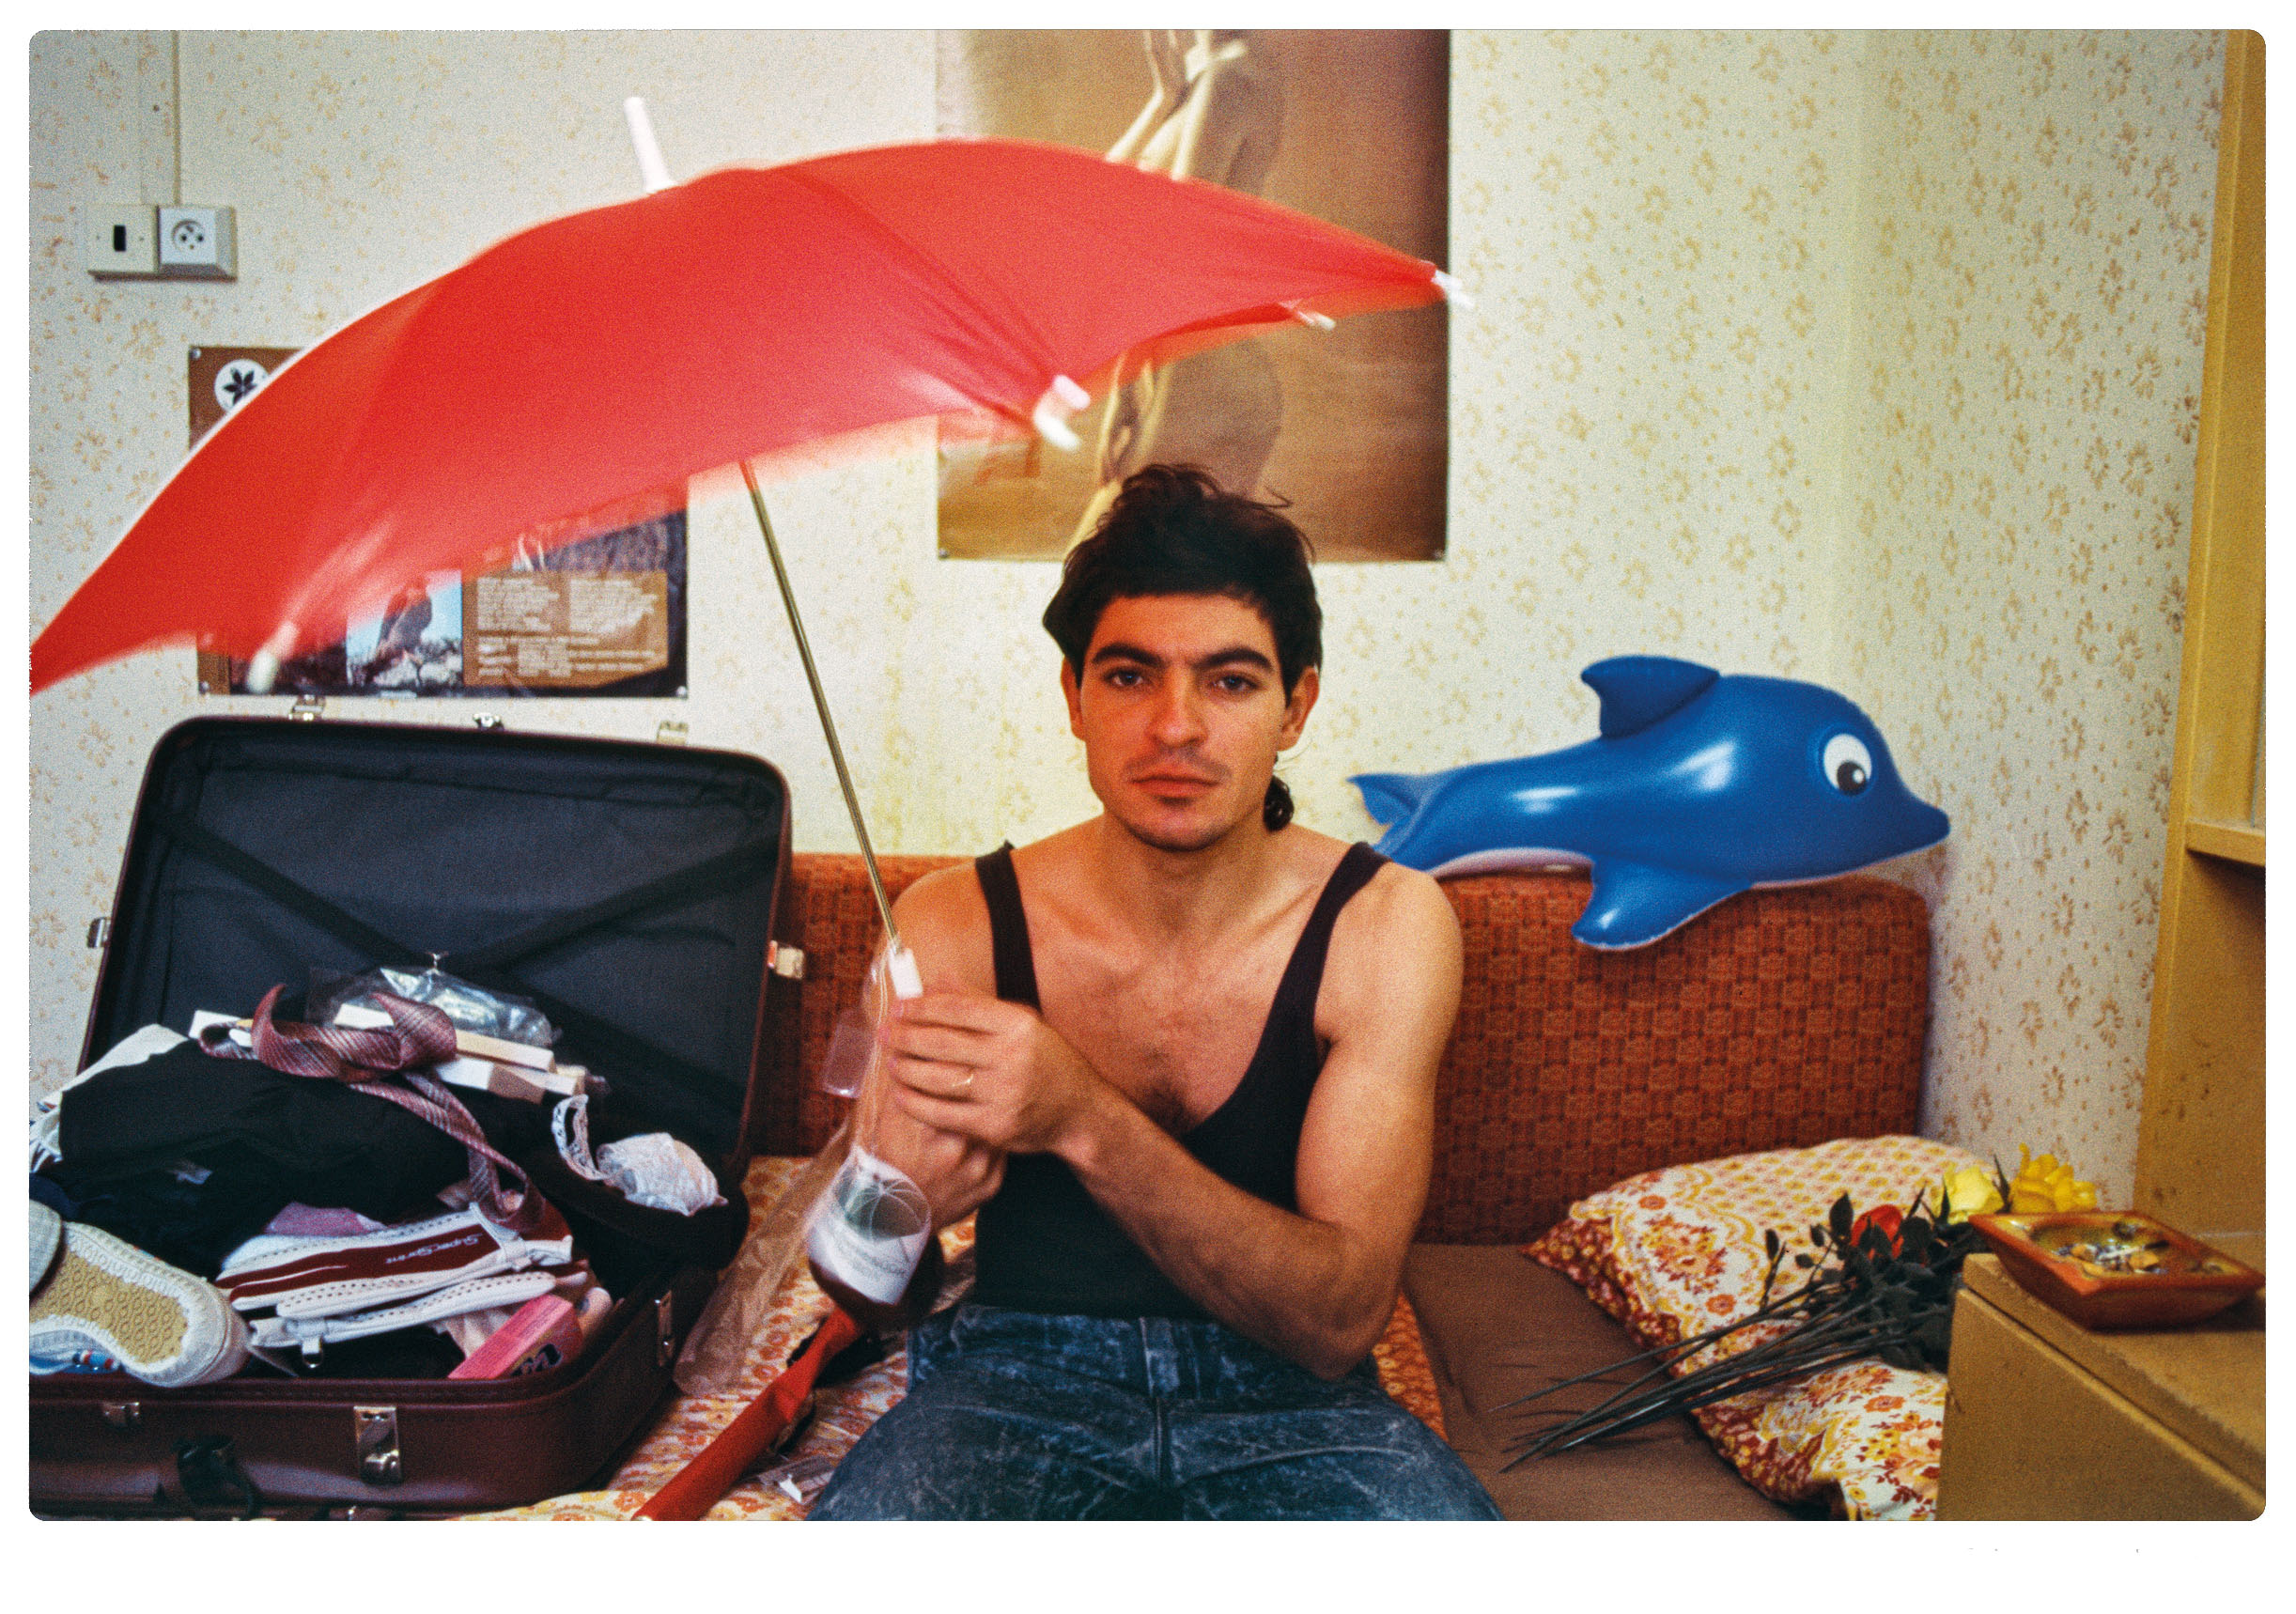 Šestadvacetiletý José pózuje na ubytovně v Litvínově s novým deštníkem a nafukovacím delfínem. Zítra nasedne do letadla směr Havana.